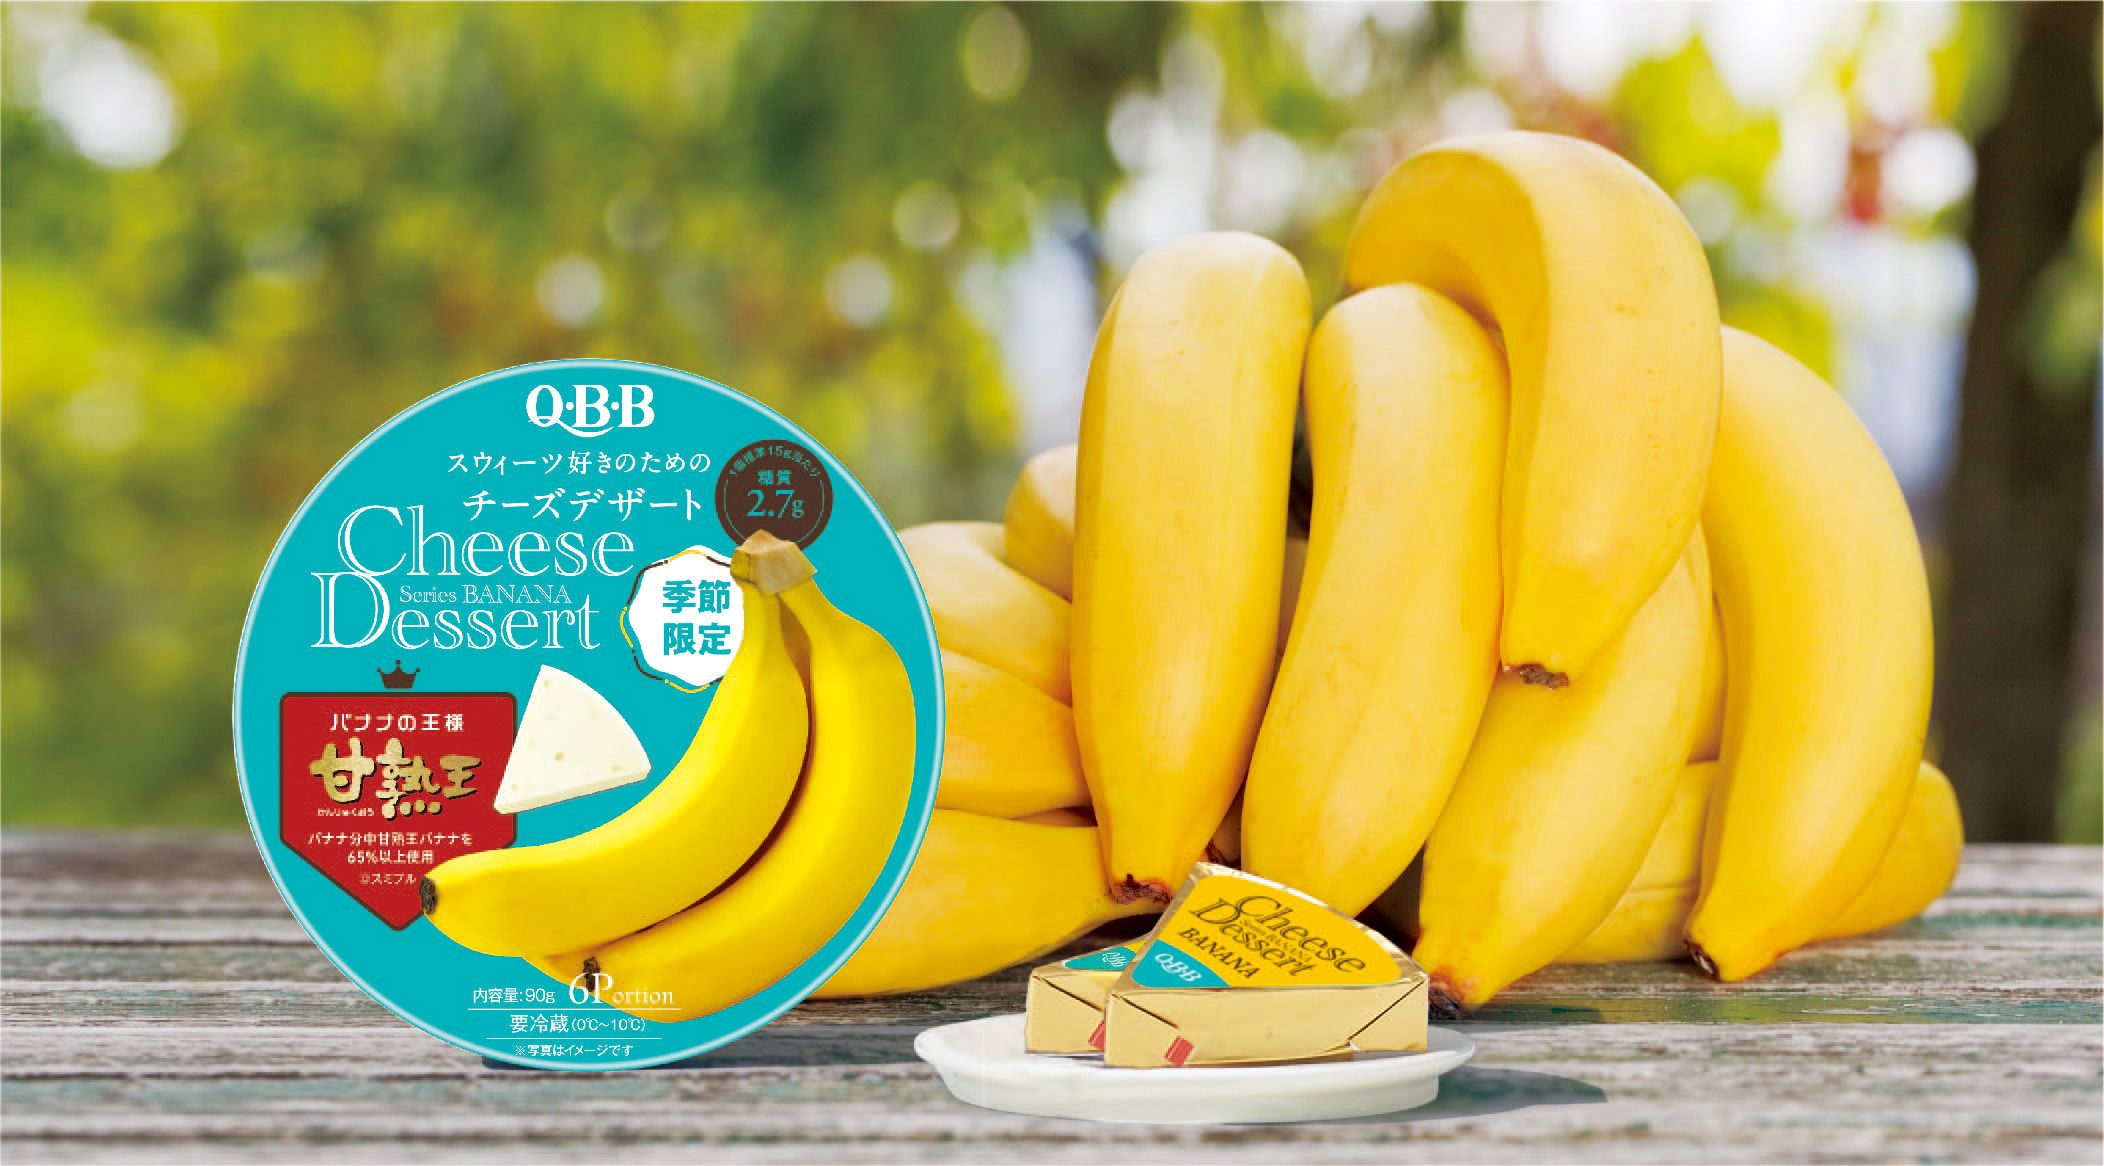 チーズデザートNO.1のQBB、春の新商品！“バナナの王様”「甘熟王」とコラボレーション！ねっとり食感と粒感、濃厚なバナナ風味が口いっぱいに #Z世代Pick